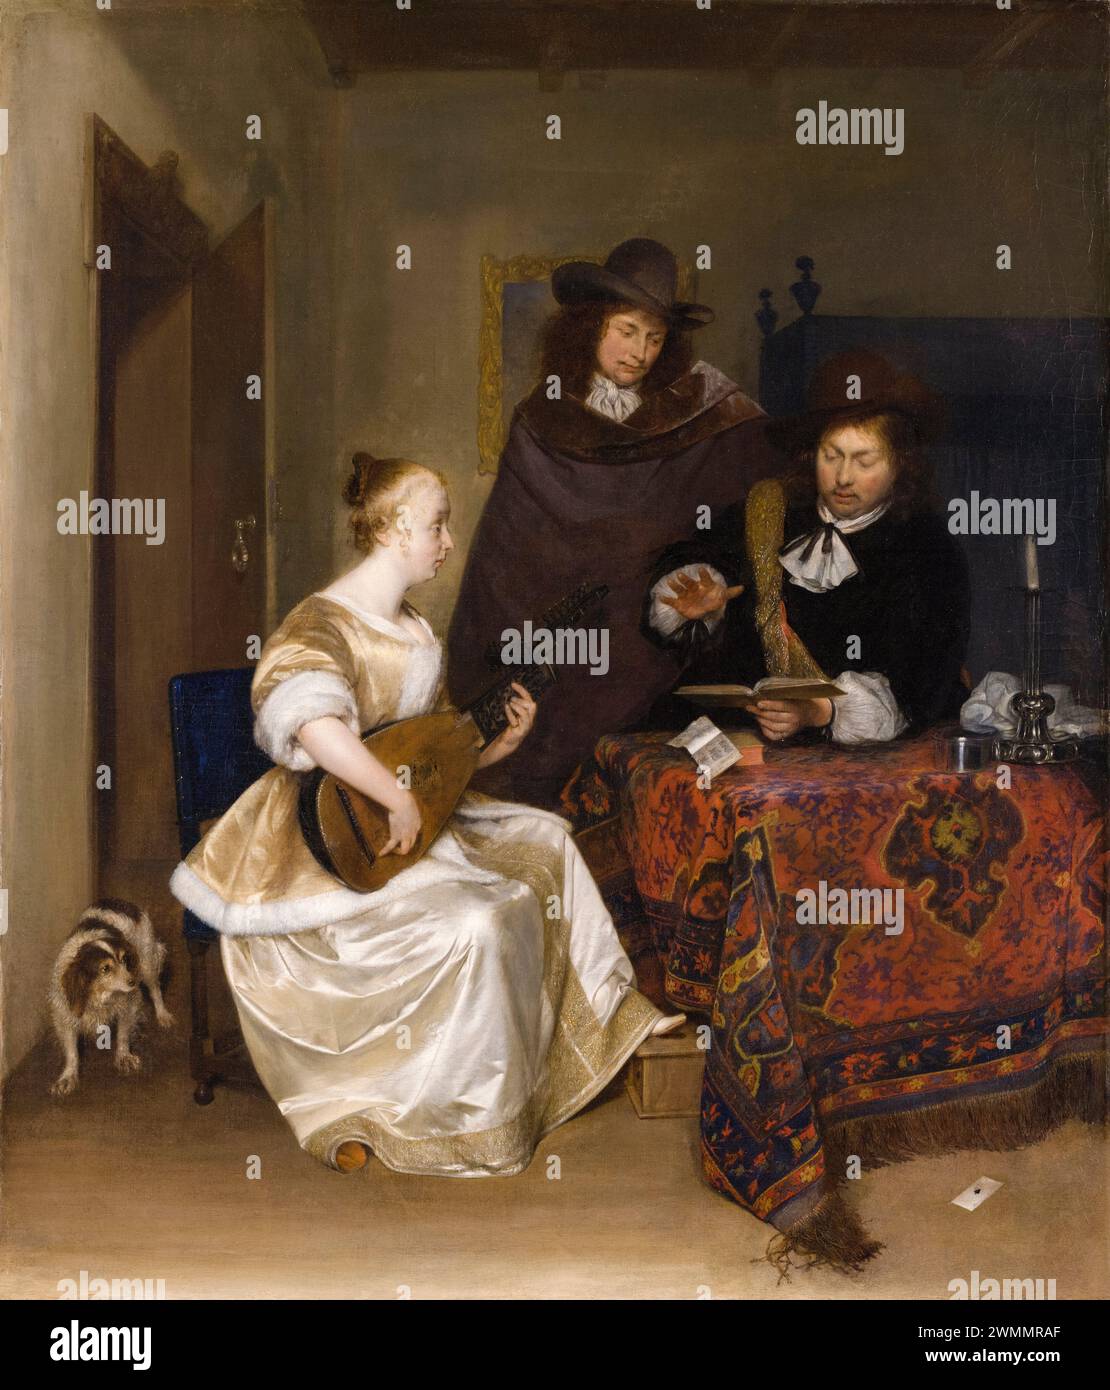 Gerard ter Borch, Une femme jouant un luth à deux hommes, peinture à l'huile sur toile, 1667-1668 Banque D'Images